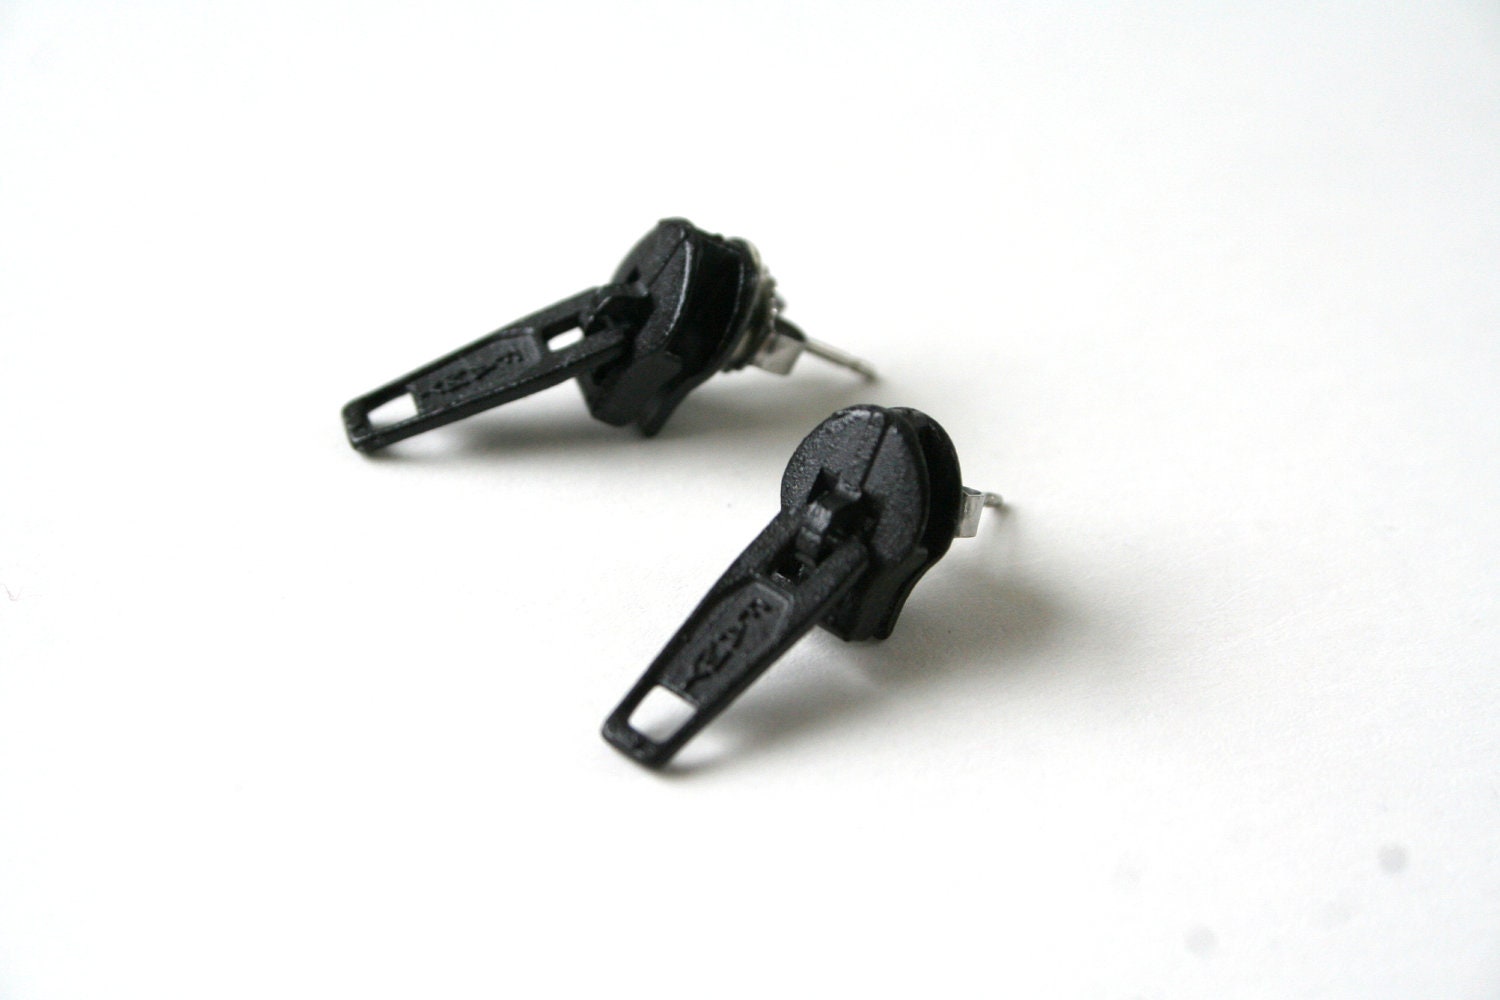 Zipper Earrings on Black Zipper Earrings   Eco Friendly Studs Earrings   Rock Punk